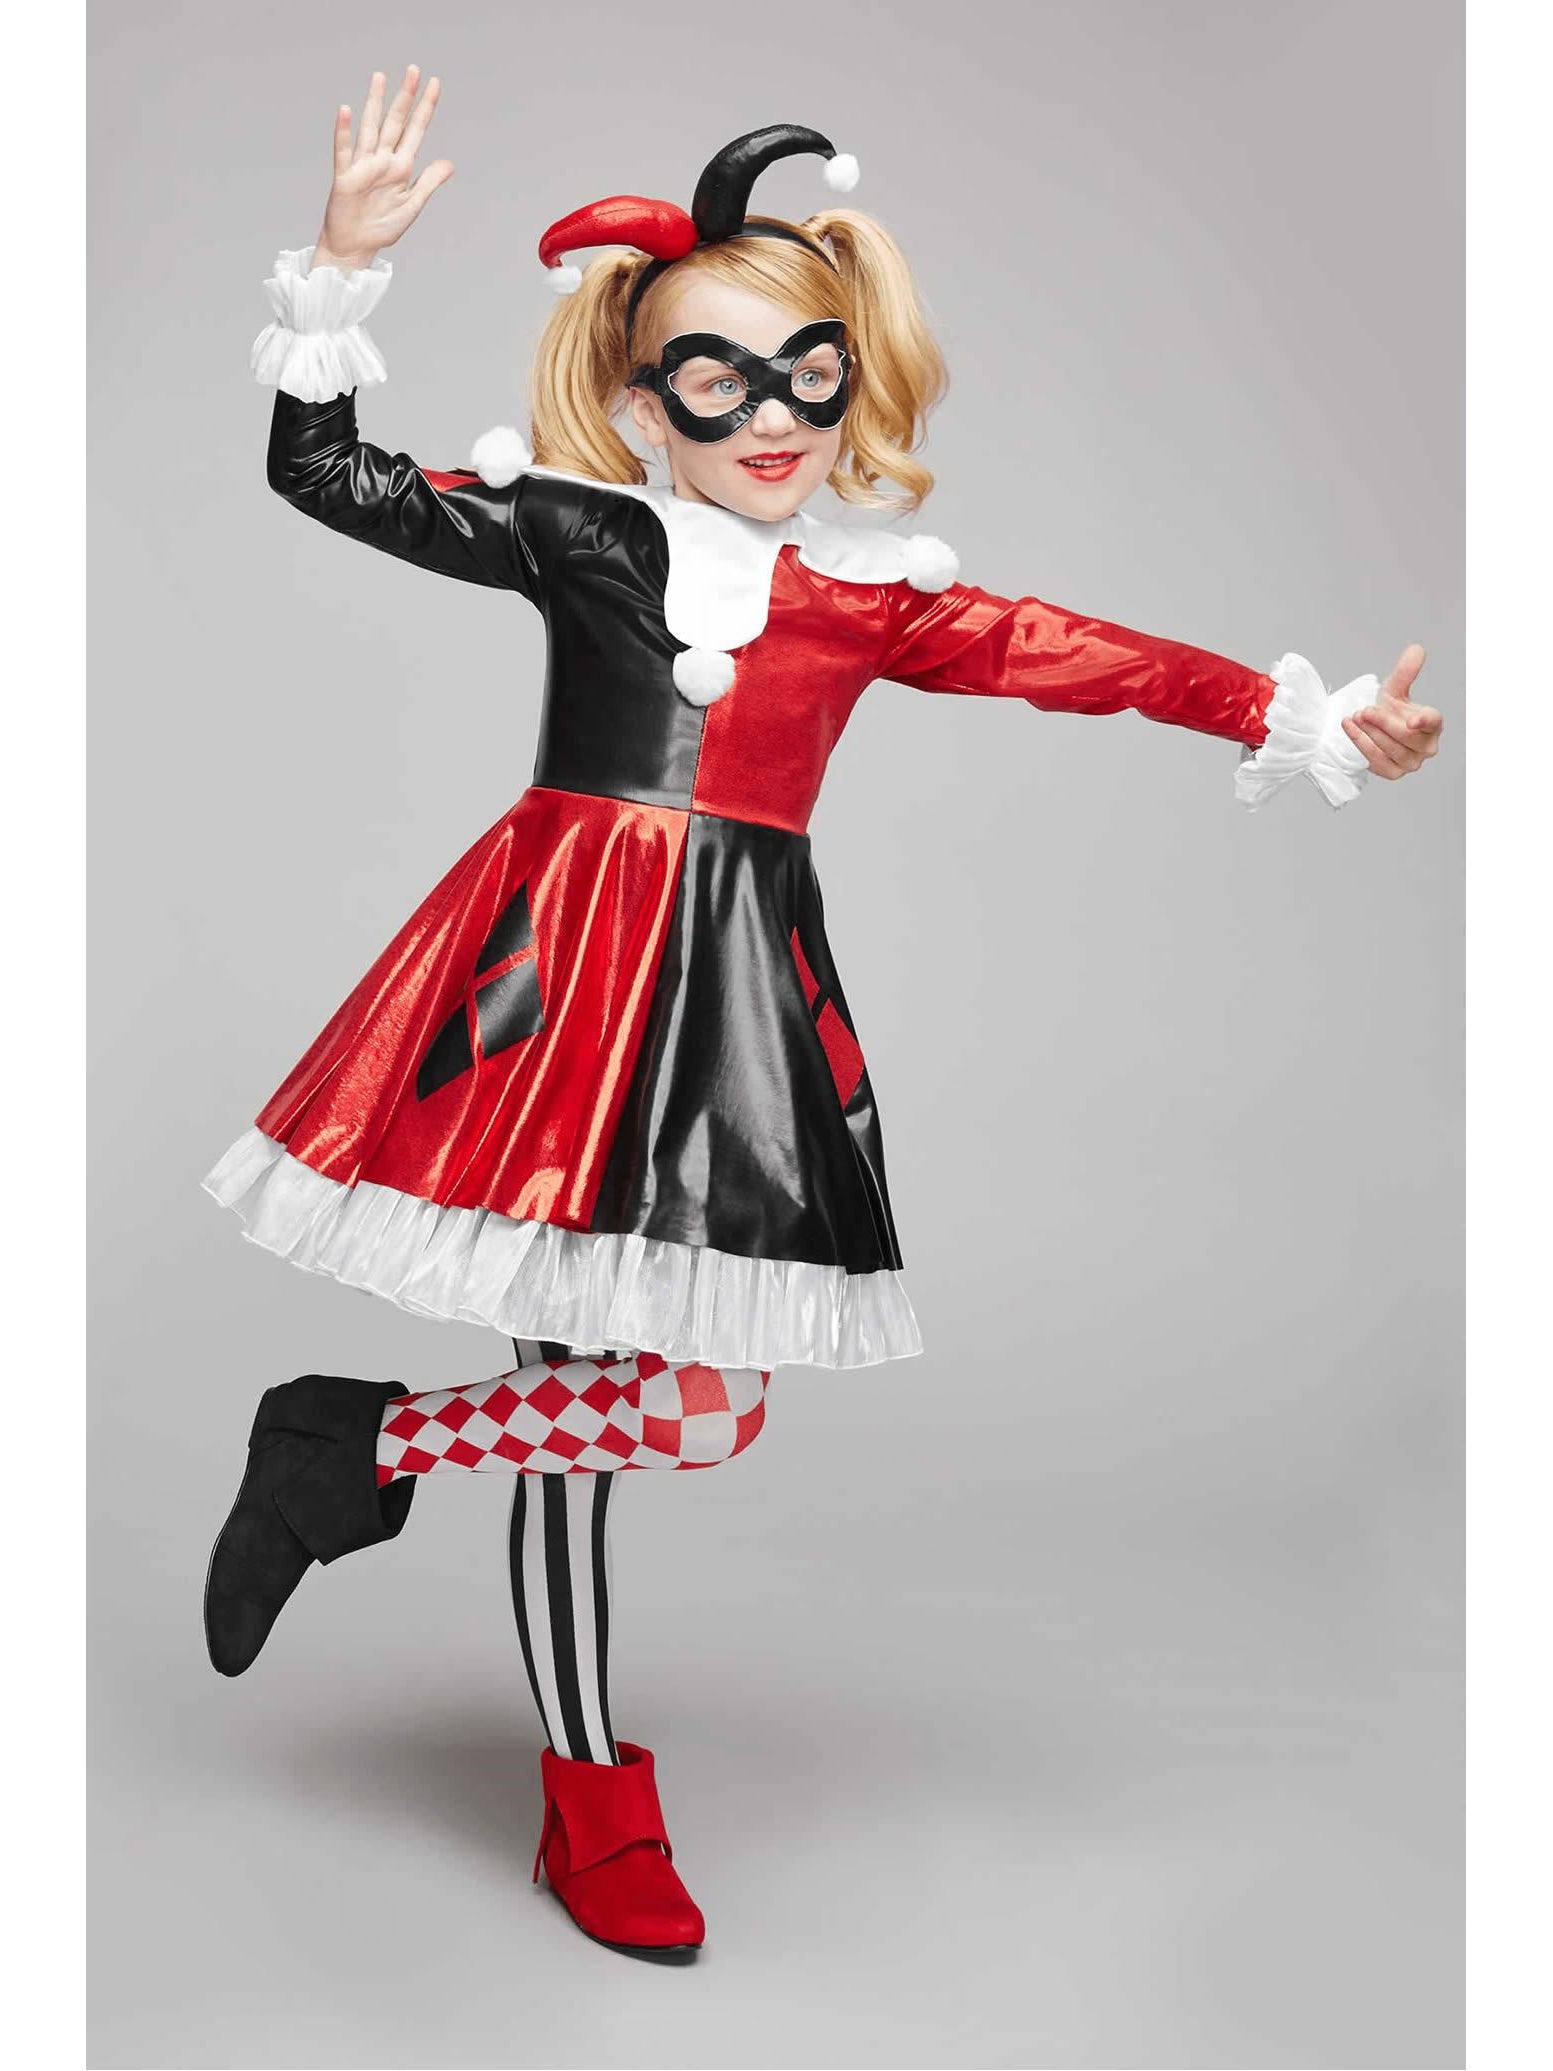 Harley Quinn Costume for Kids - DC Super Hero Girls - Chasing Fireflies